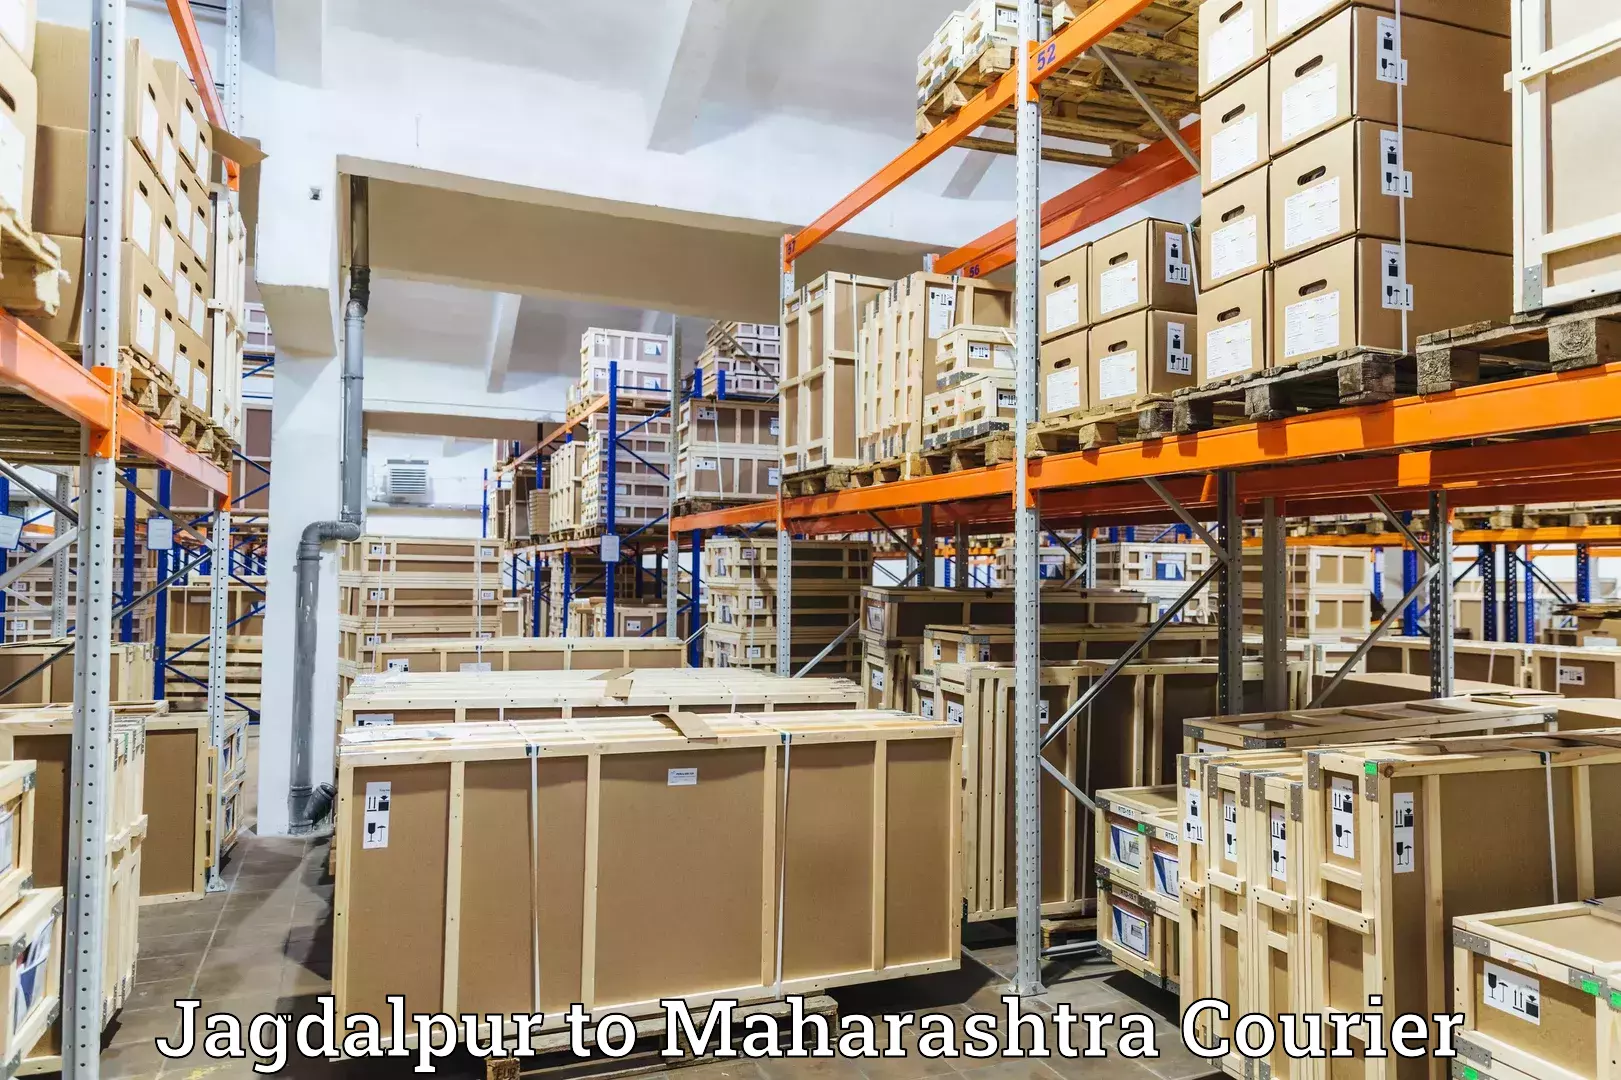 High-capacity parcel service Jagdalpur to Pimpalgaon